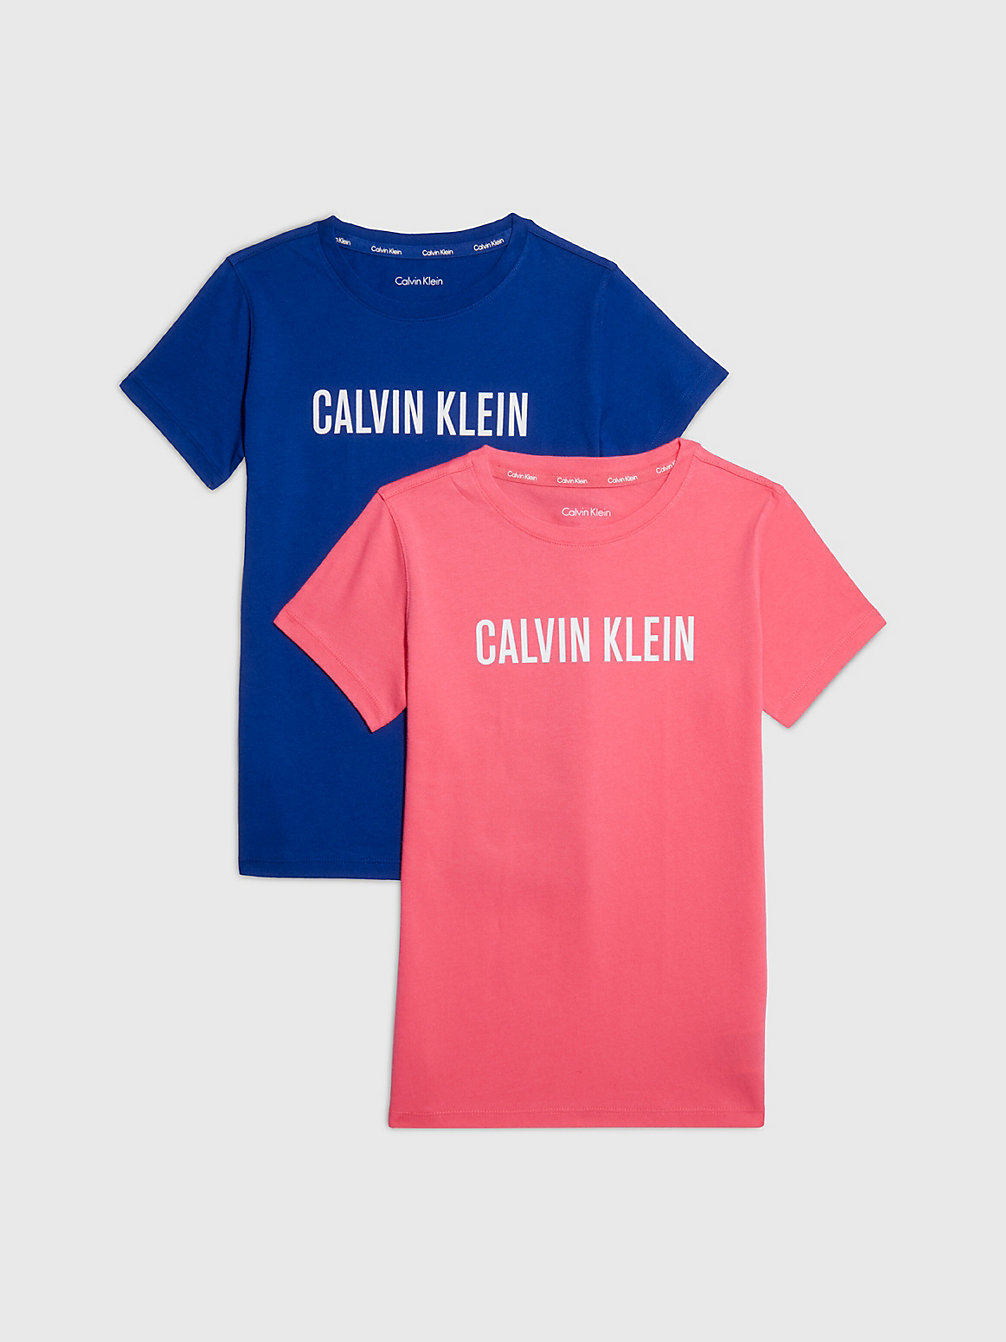 PINKFLASH/BOLDBLUE Lot De 2 T-Shirts - Intense Power undefined girls Calvin Klein